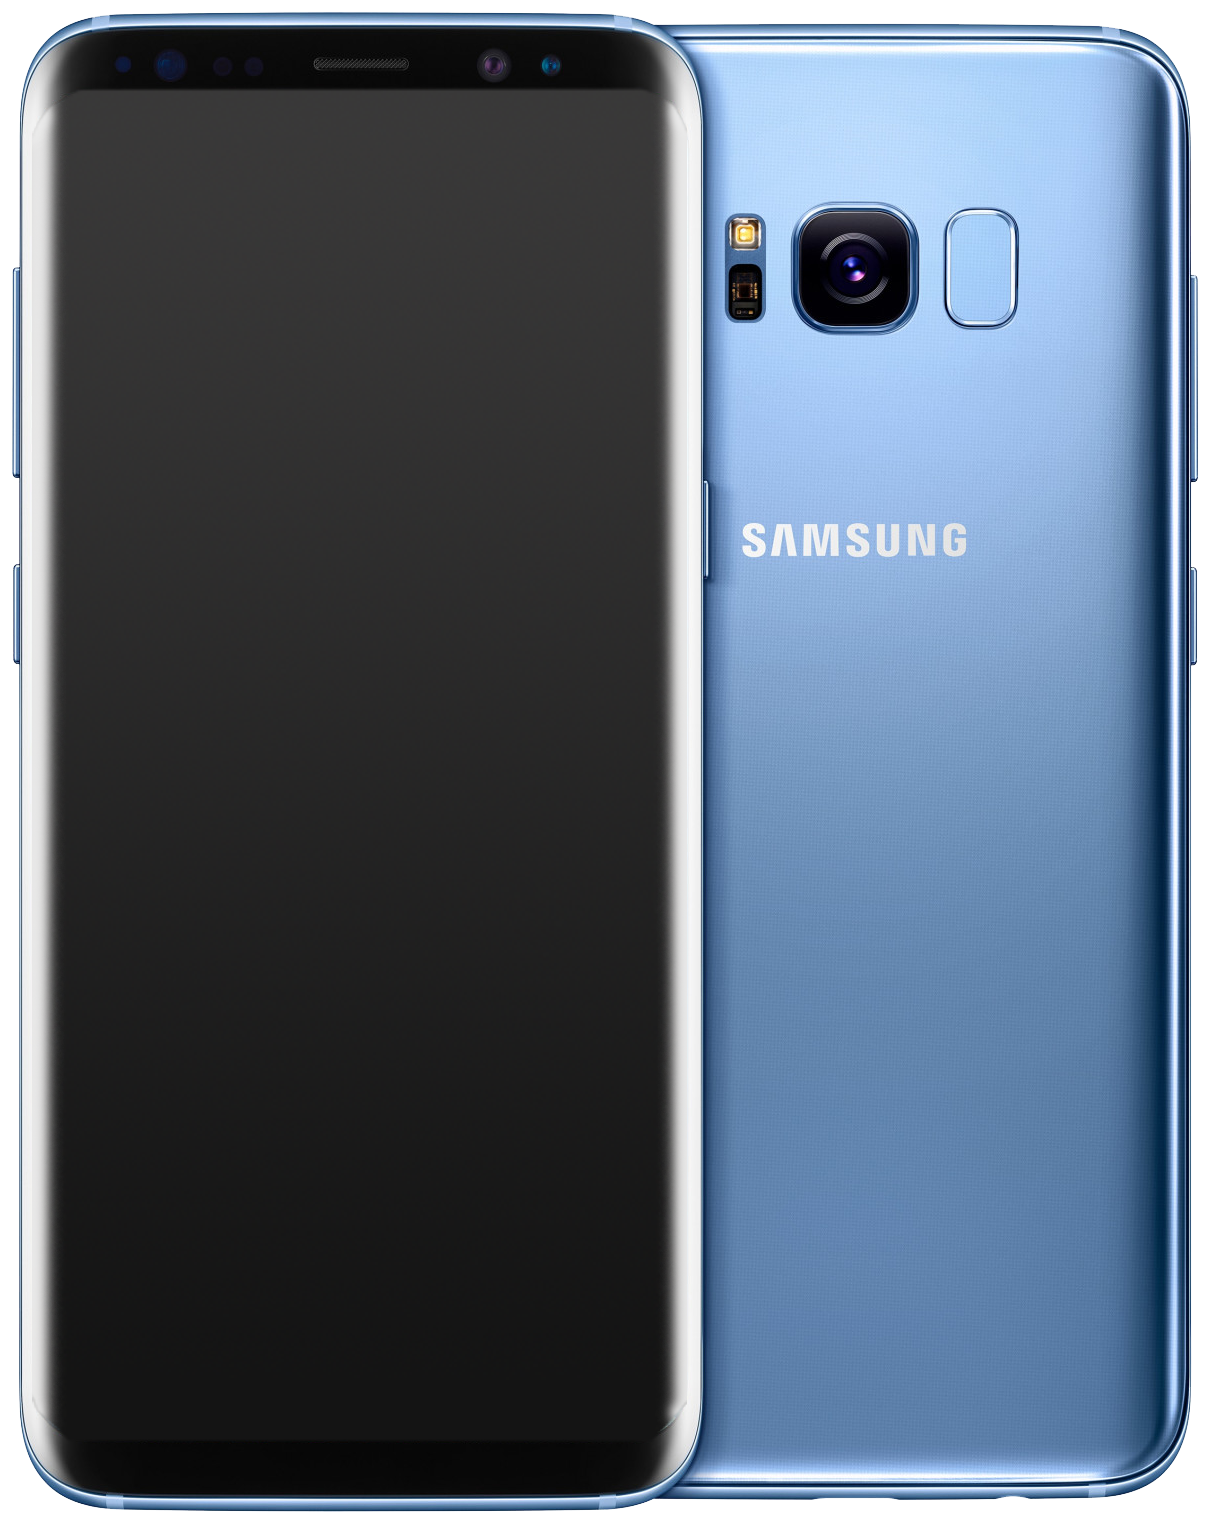 Samsung Galaxy S8 Single-SIM blau - Ohne Vertrag